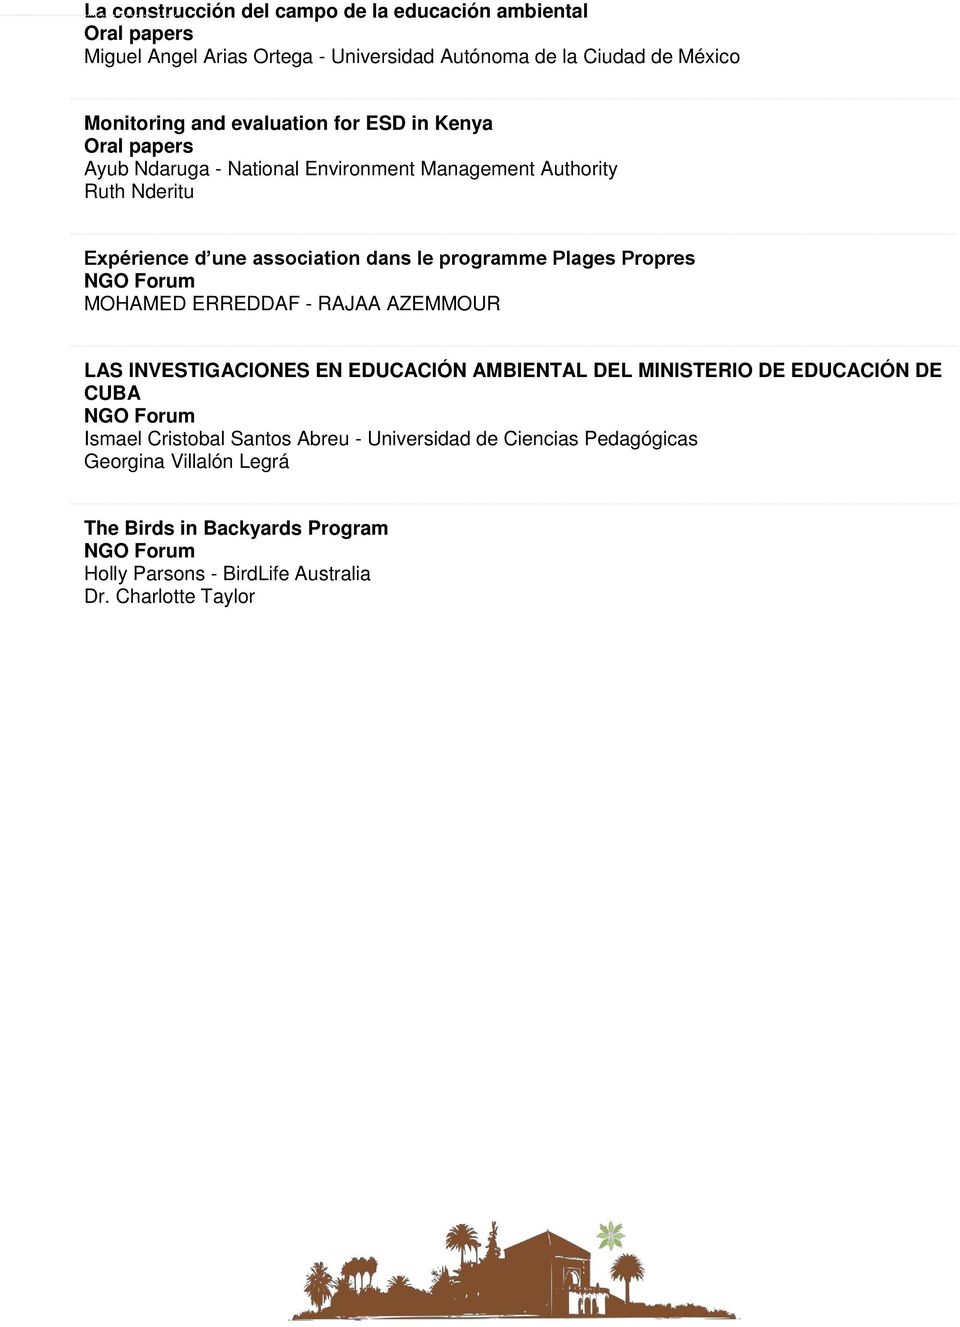 Plages Propres NGO Forum MOHAMED ERREDDAF - RAJAA AZEMMOUR LAS INVESTIGACIONES EN EDUCACIÓN AMBIENTAL DEL MINISTERIO DE EDUCACIÓN DE CUBA NGO Forum Ismael